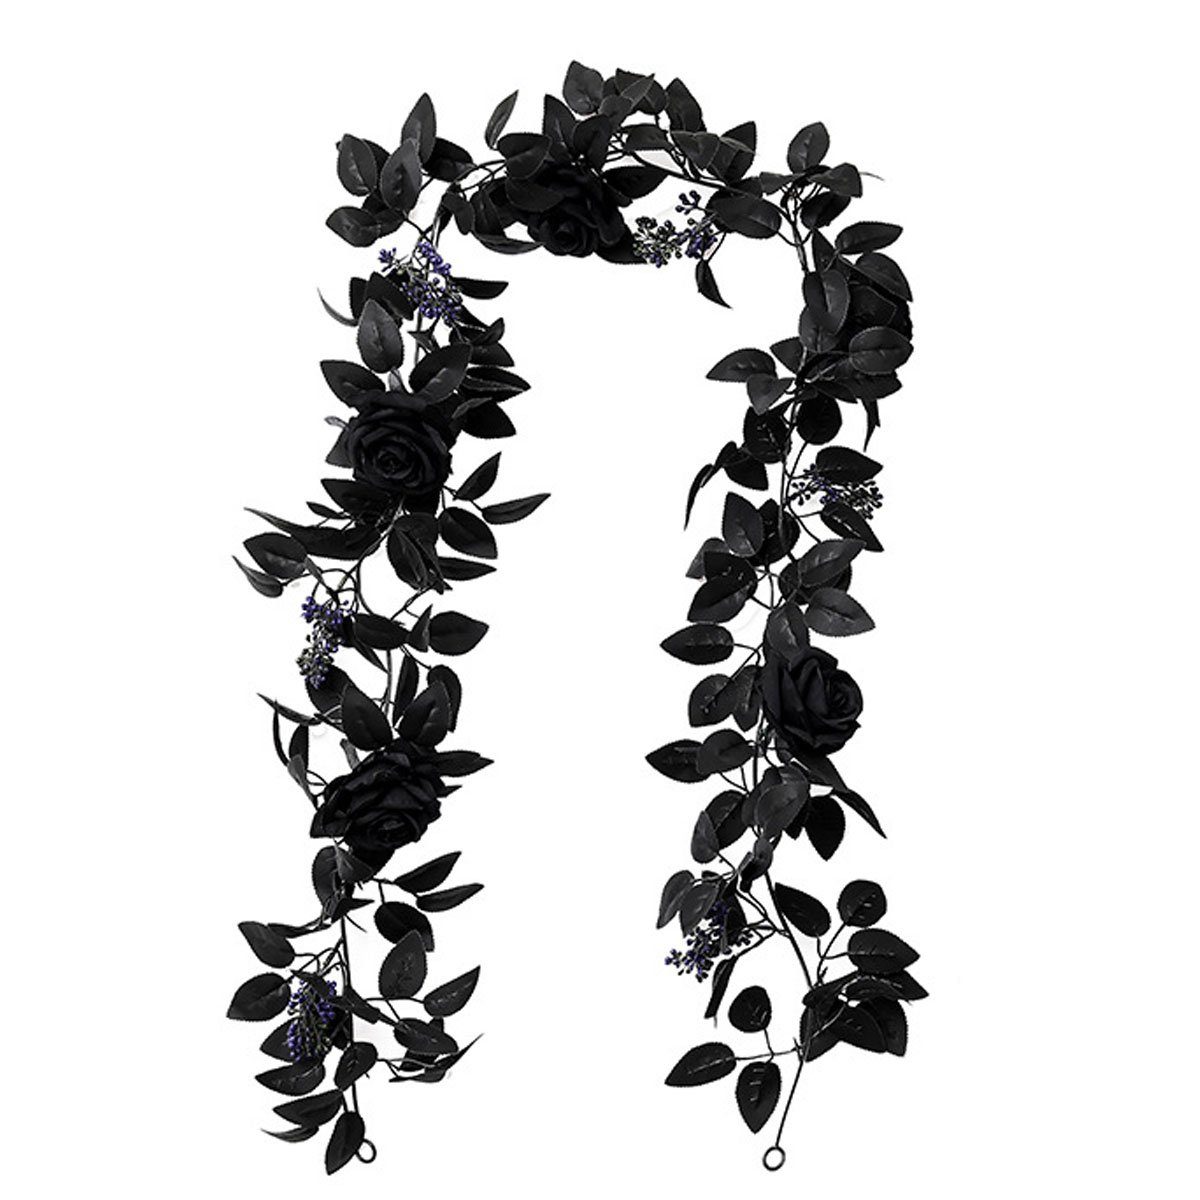 Kunstblumenstrauß Künstliche schwarze Rosenranke, künstliche Rosenranke, GelldG schwarz(Stil3)